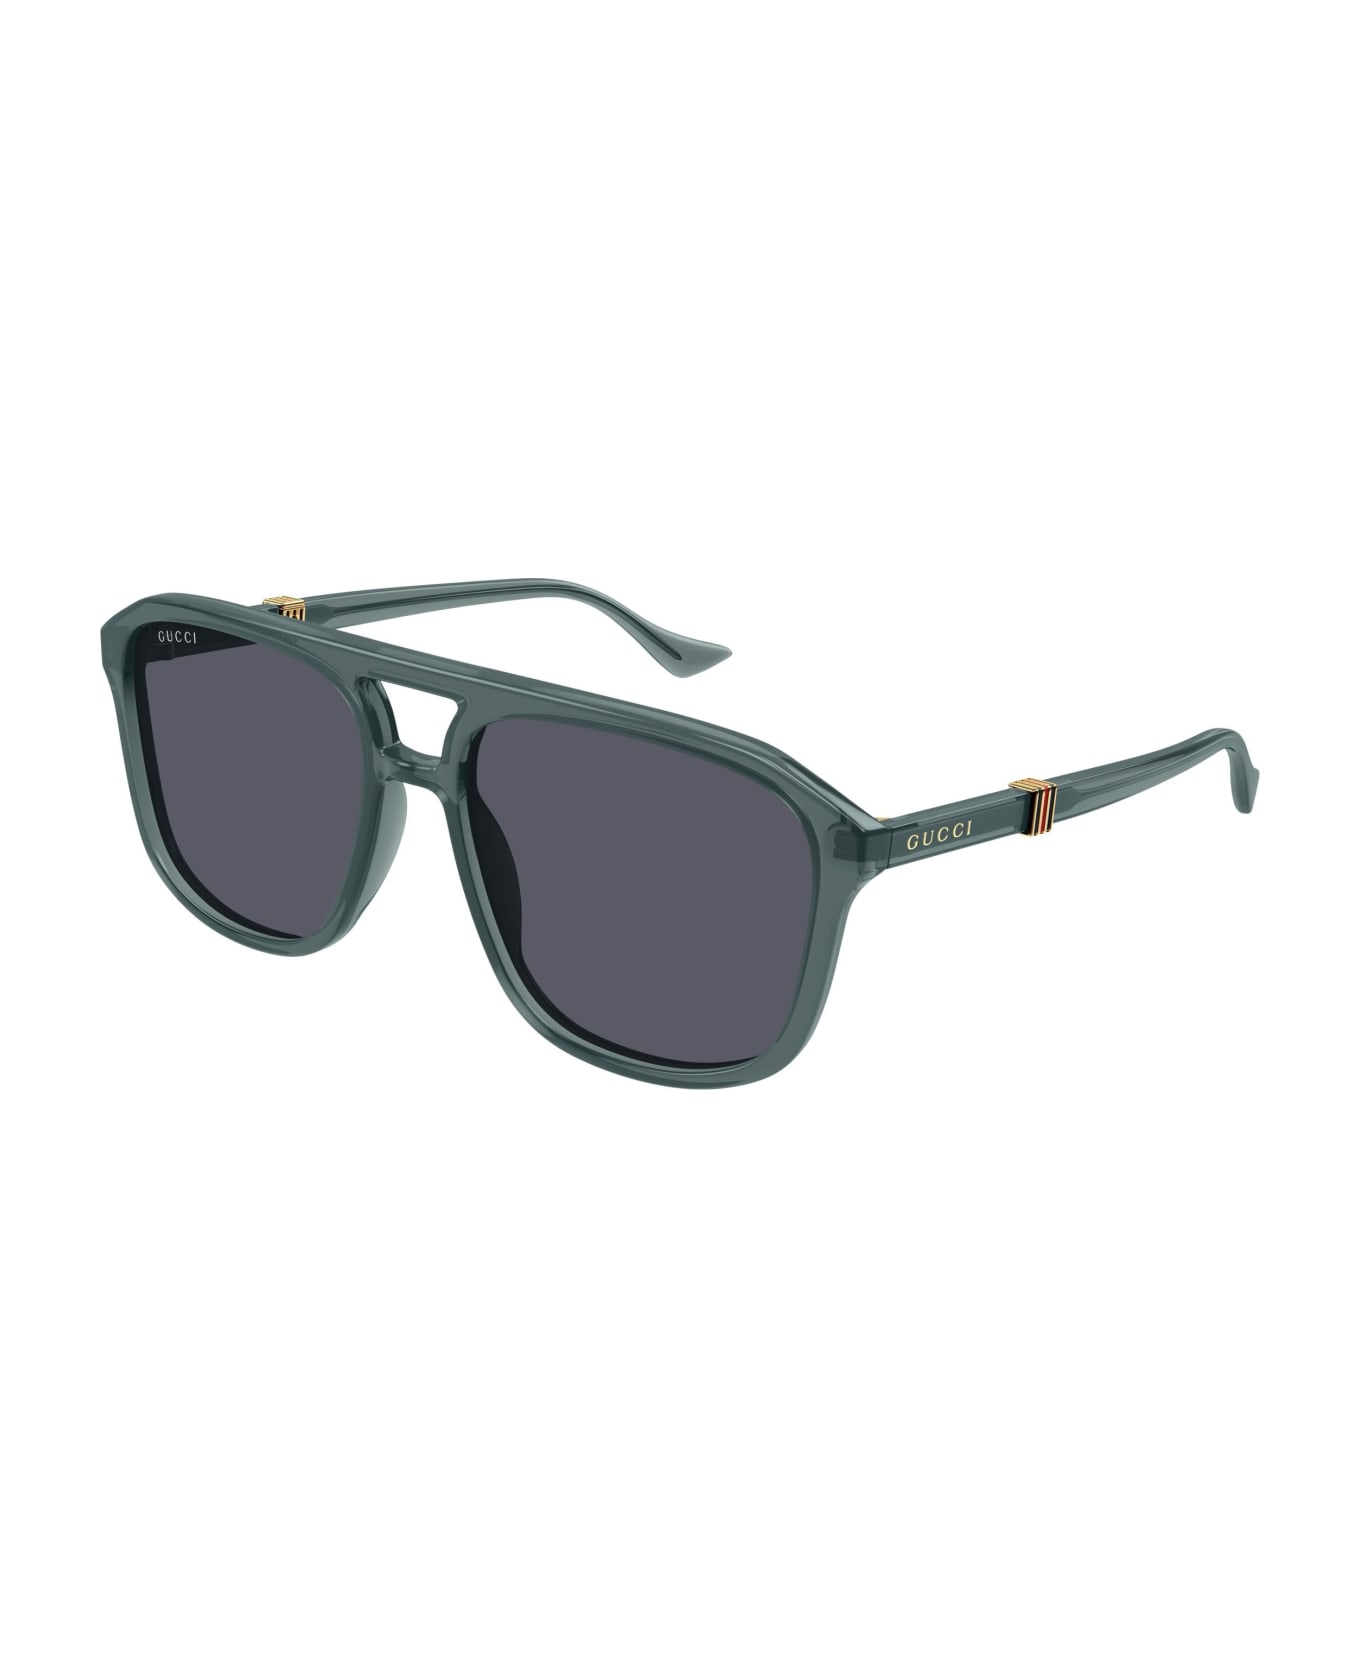 Gucci Eyewear Sunglasses - Verde/Grigio サングラス